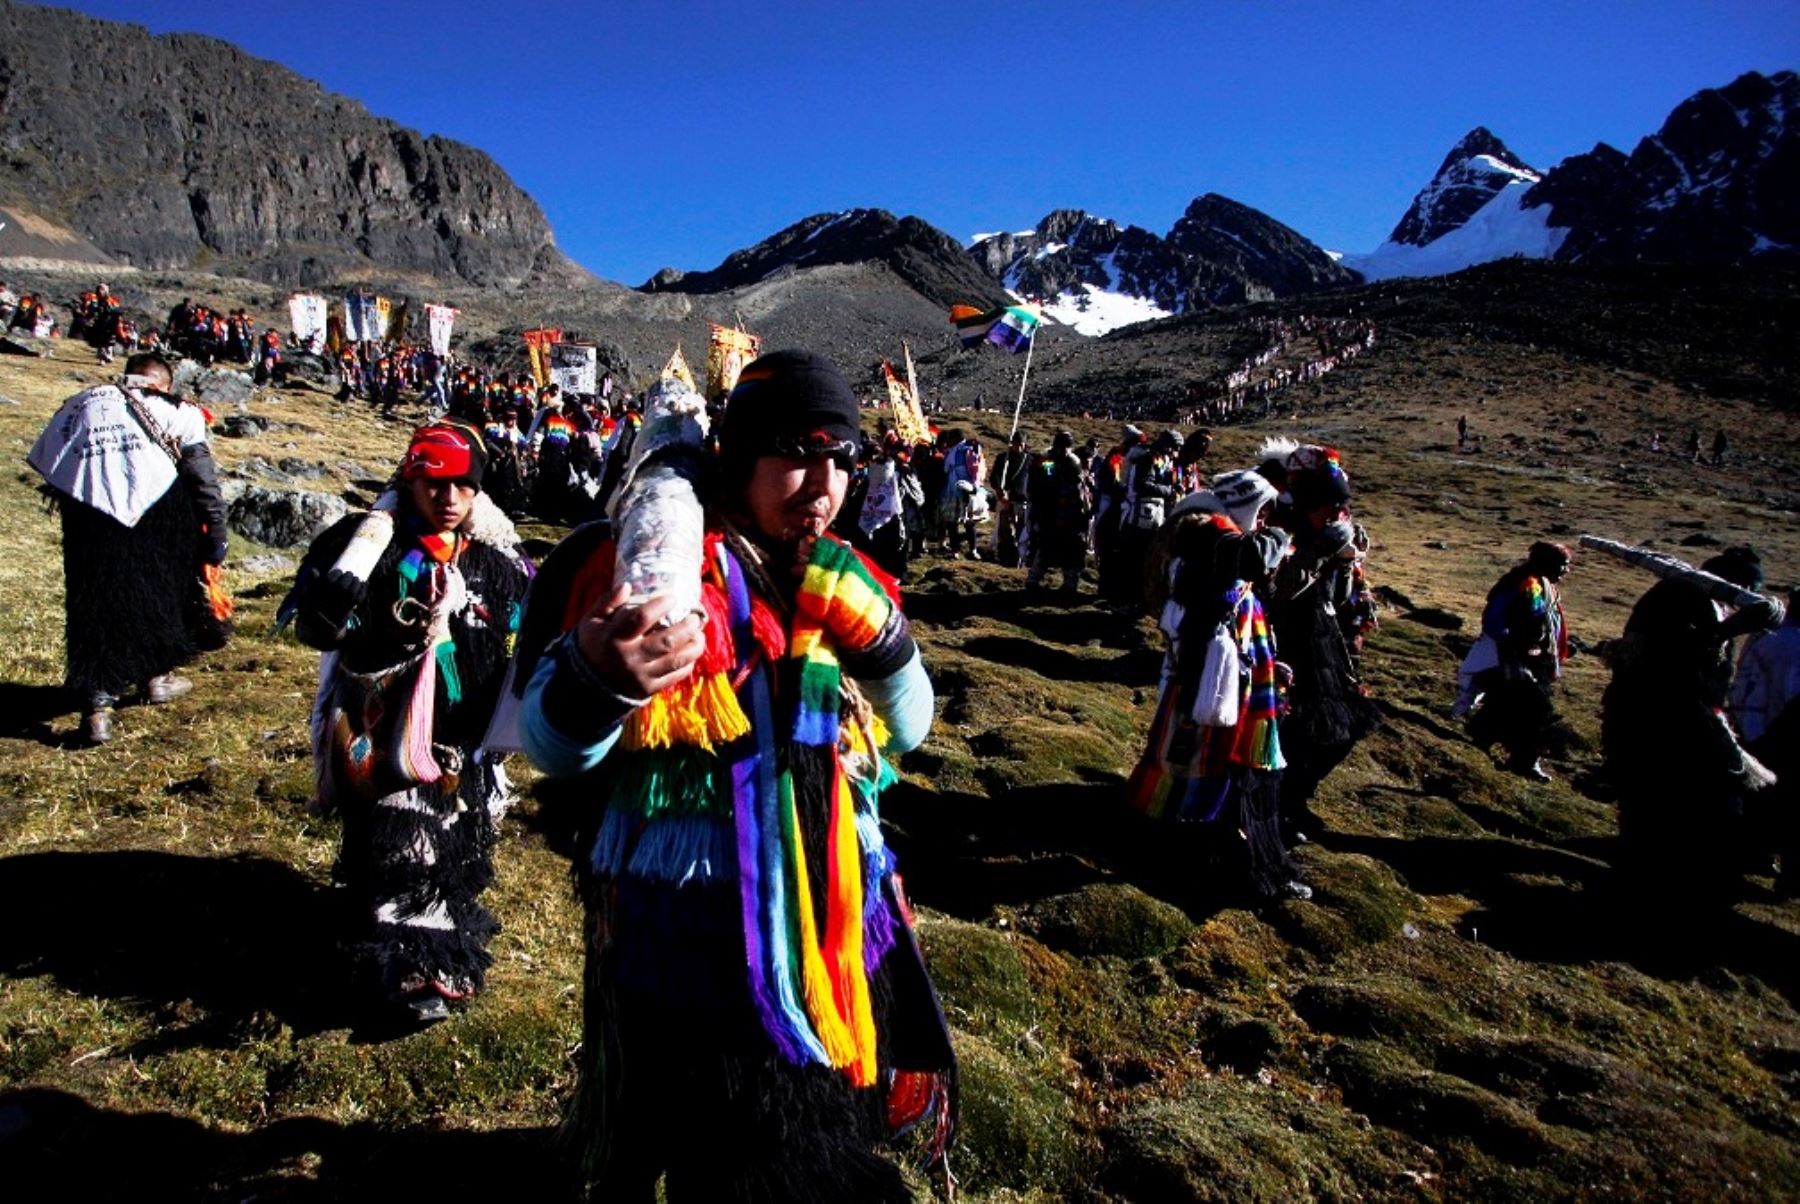 Peregrinación al Señor de Qoyllur Riti, en Ocongate, Cusco, se desarrollará entre el 19 al 25 de mayo. ANDINA/Percy Hurtado